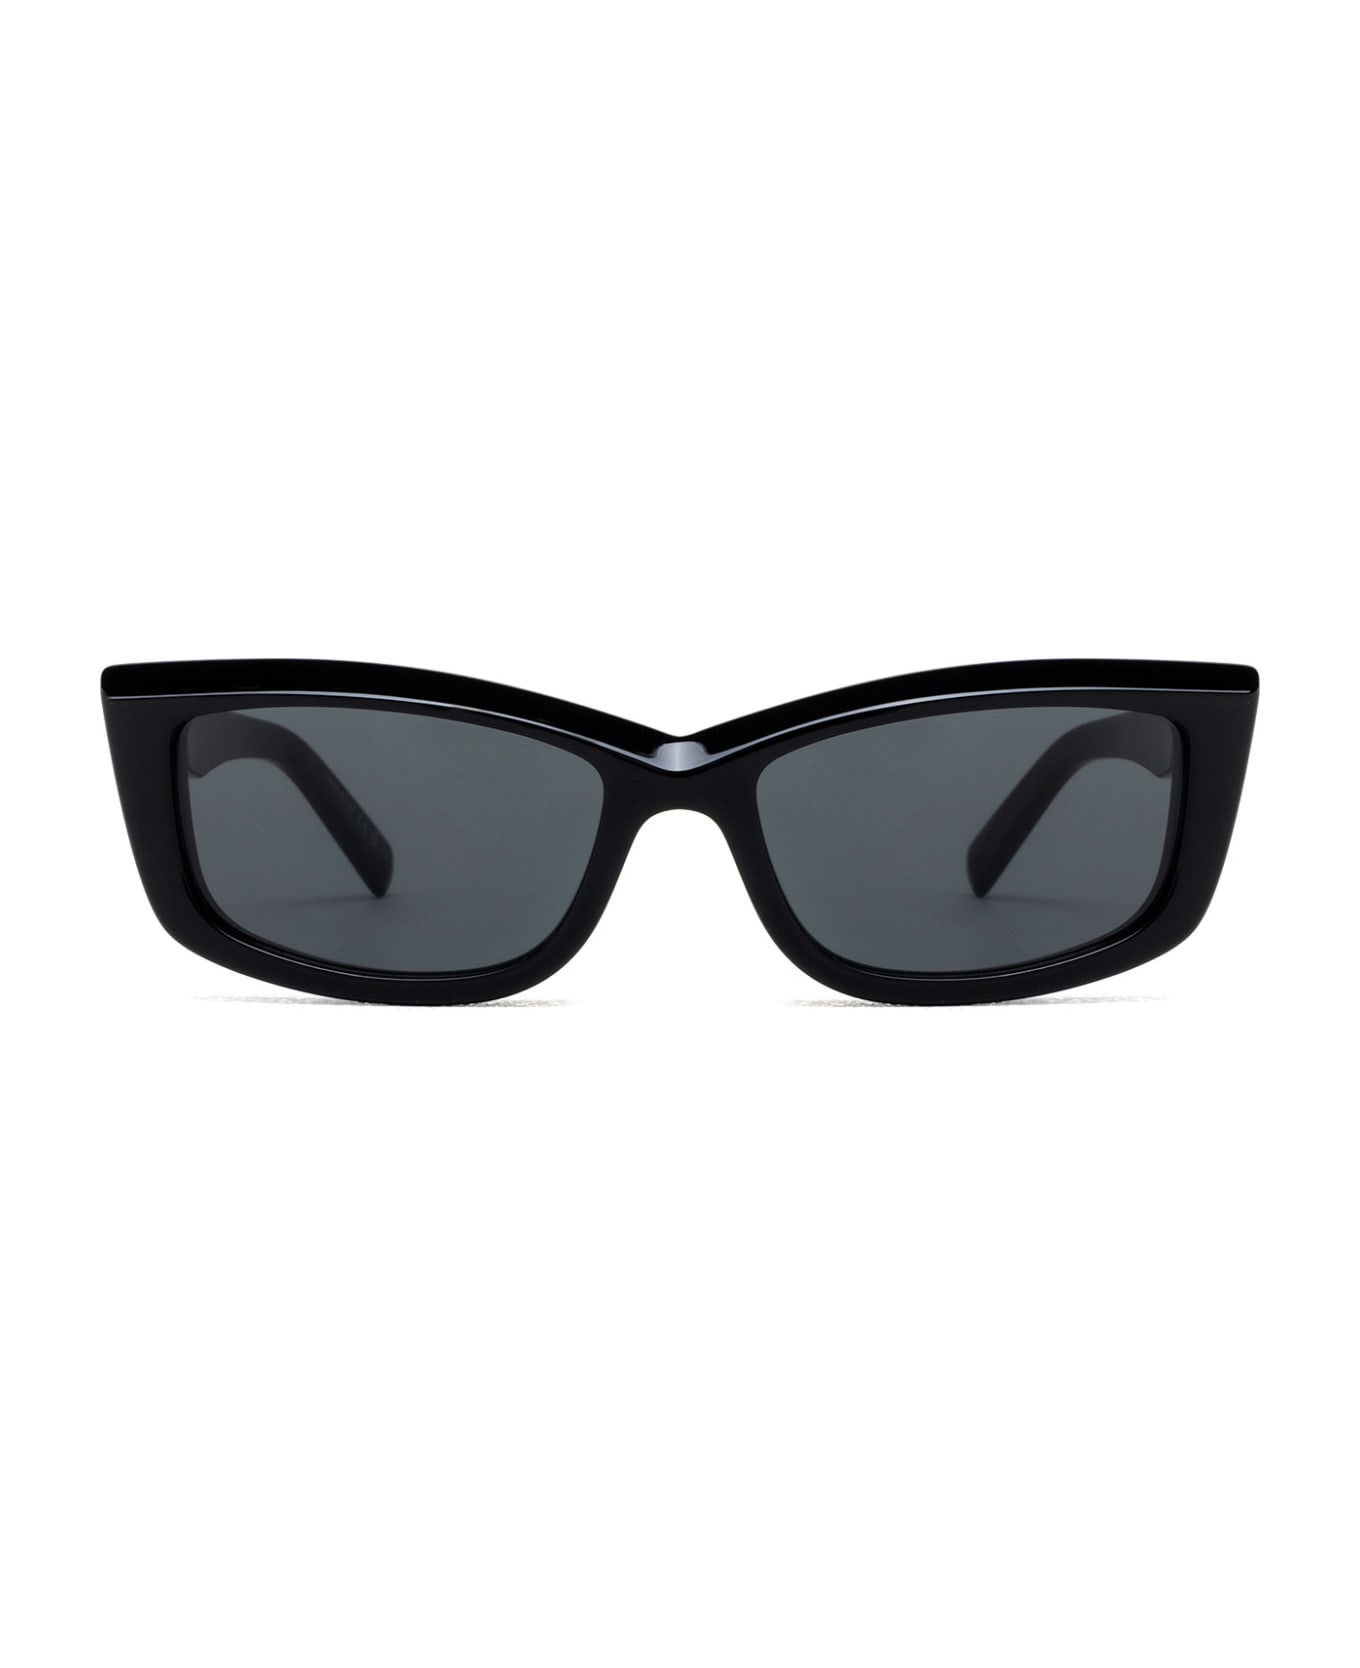 Saint Laurent Eyewear Sl 658 Black Sunglasses - Black